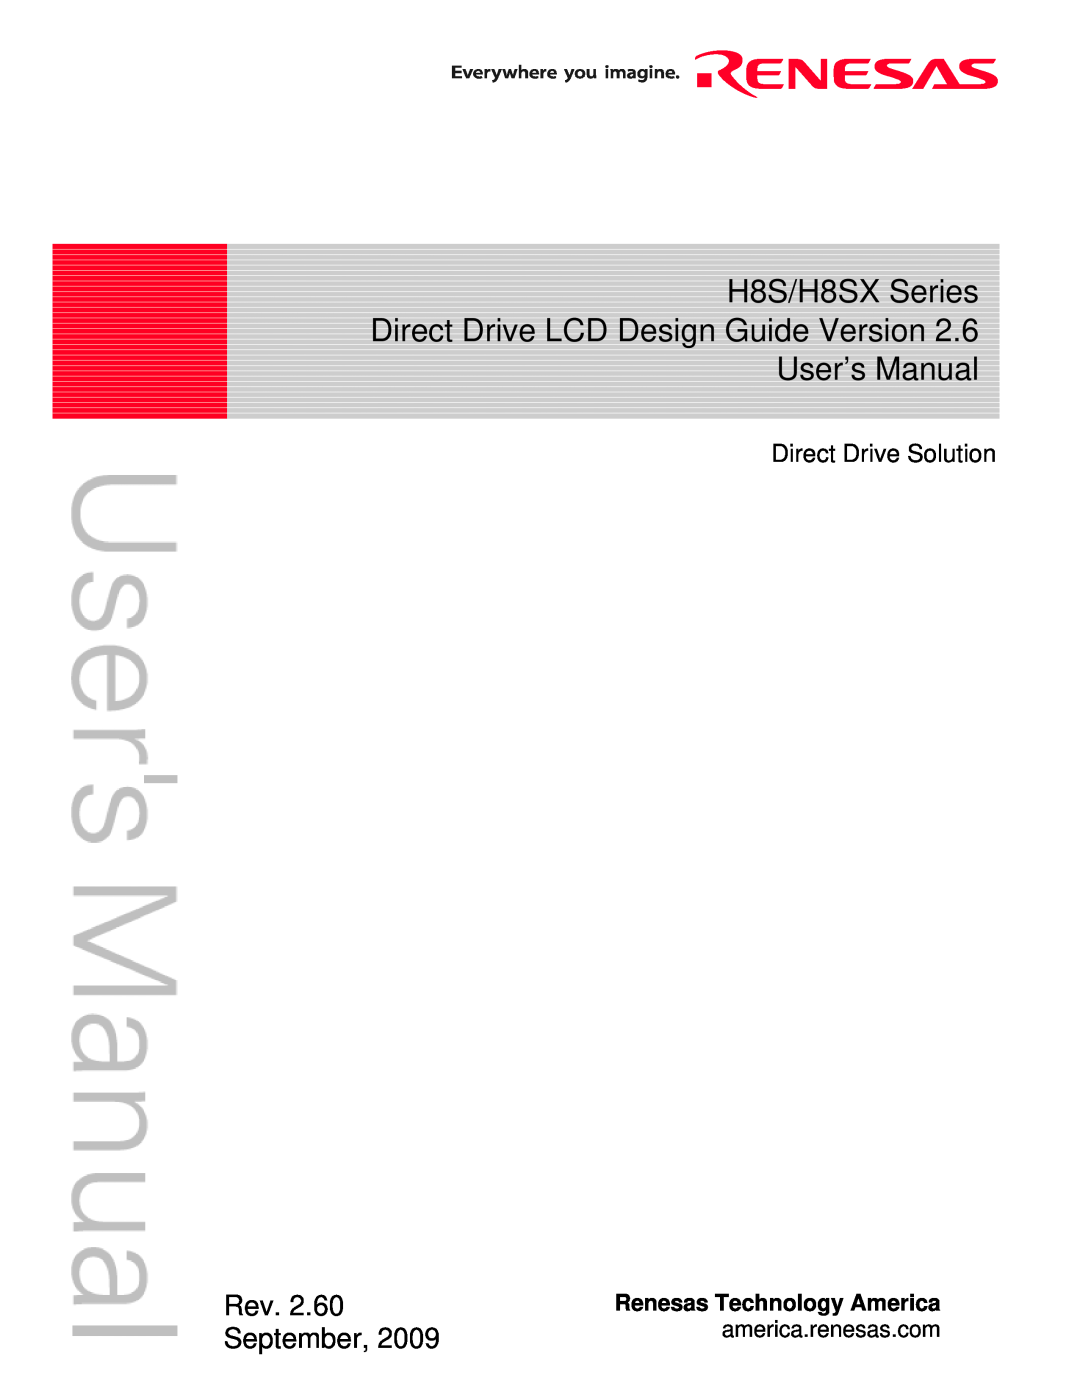 Renesas user manual H8S/H8SX Series Direct Drive LCD Design Guide Version User’s Manual, Rev. 2.60 September 